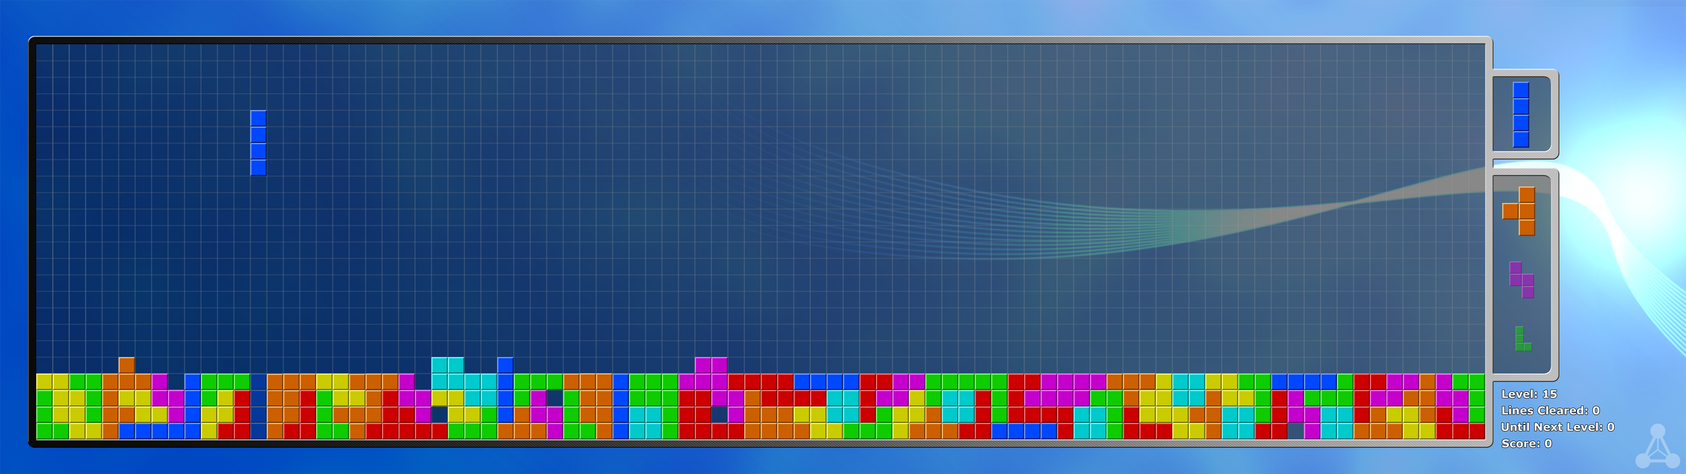 Zero Points - Tetris Dual Monitor Wallpaper